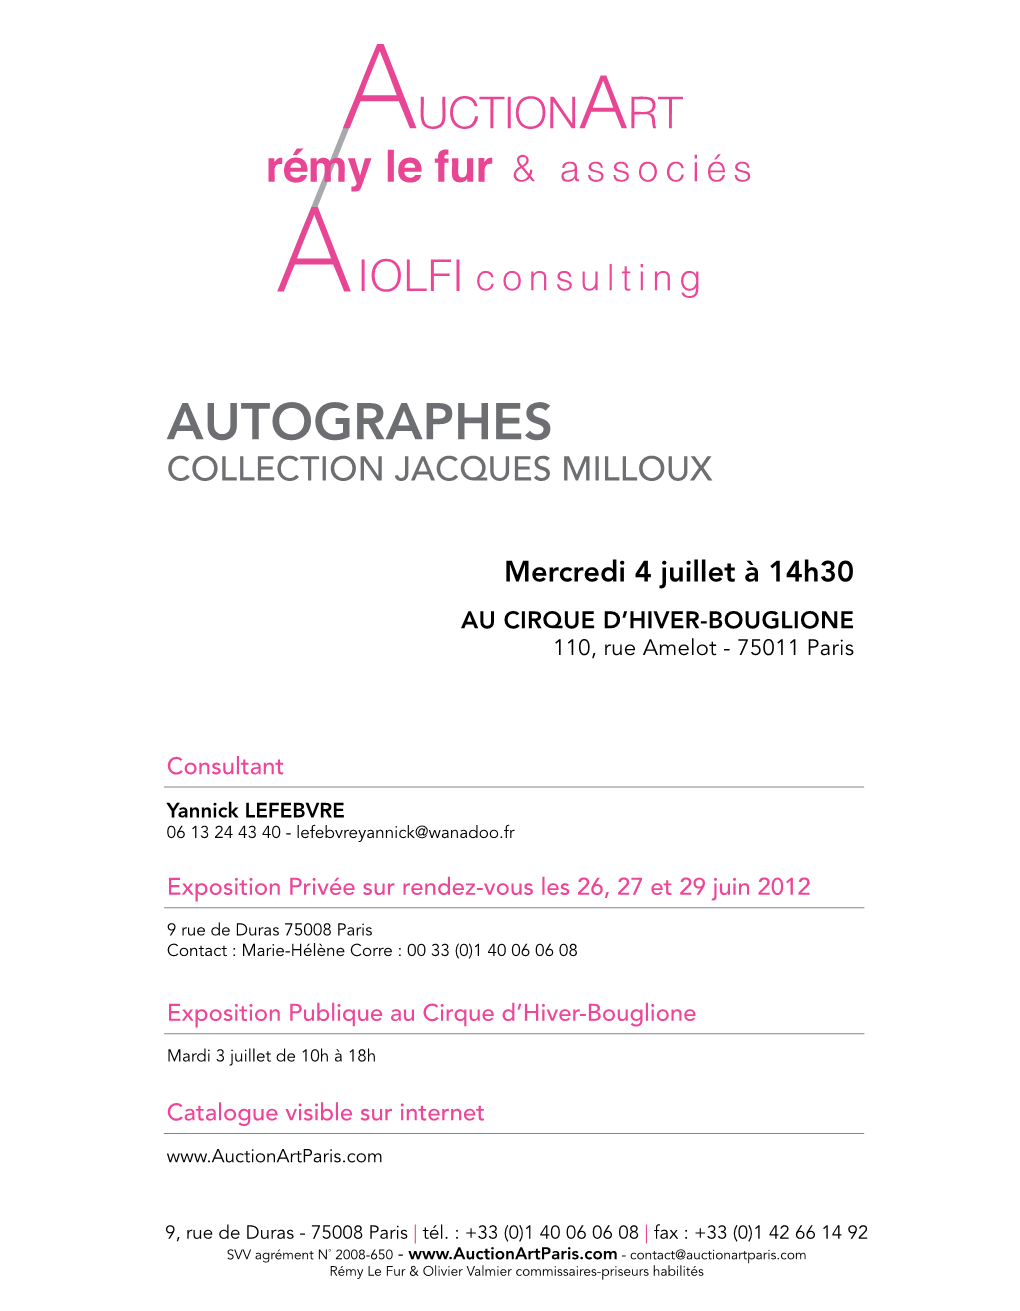 Autographes Collection Jacques Milloux